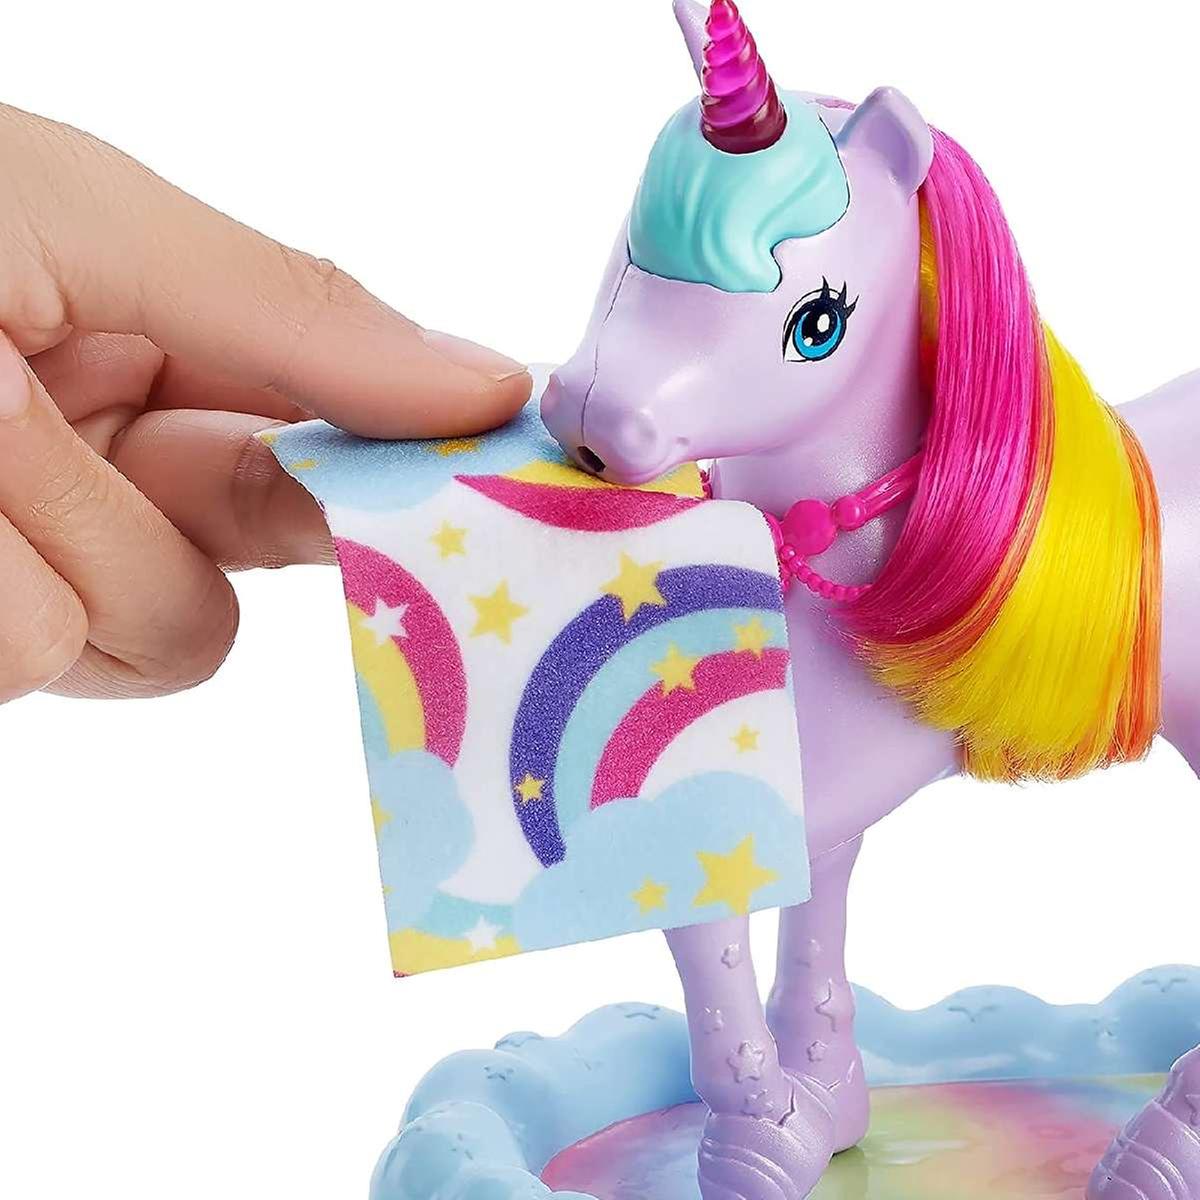 Barbie - Muñeca Dreamtopia con Unicornio | Dreamtopia | Toys"R"Us España